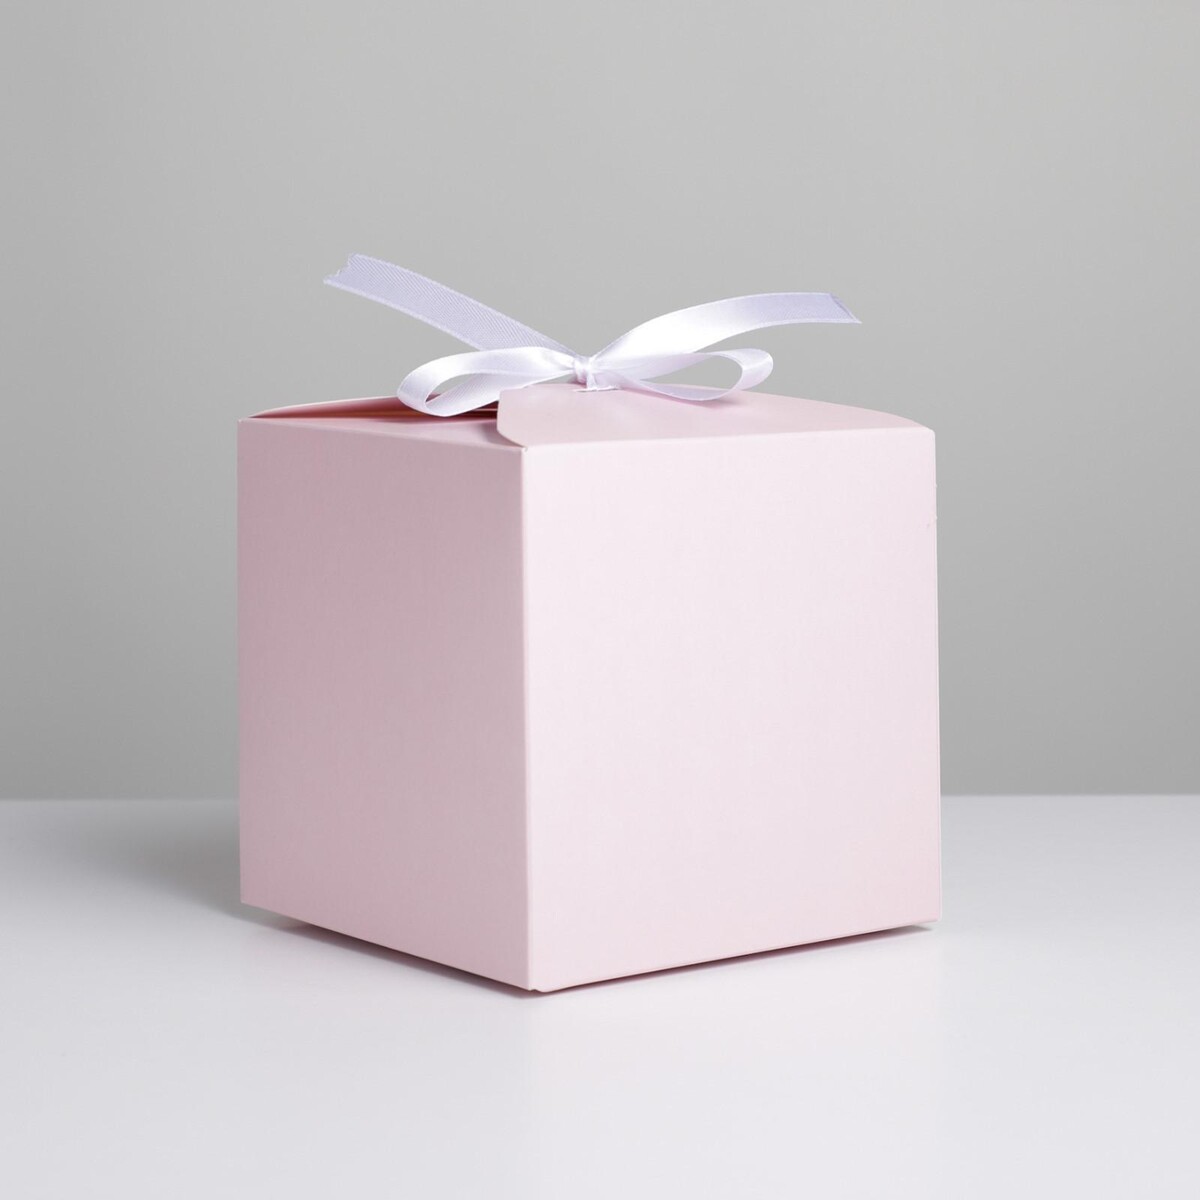 Коробка подарочная складная, упаковка, коробка складная розовая 17 х 25 см